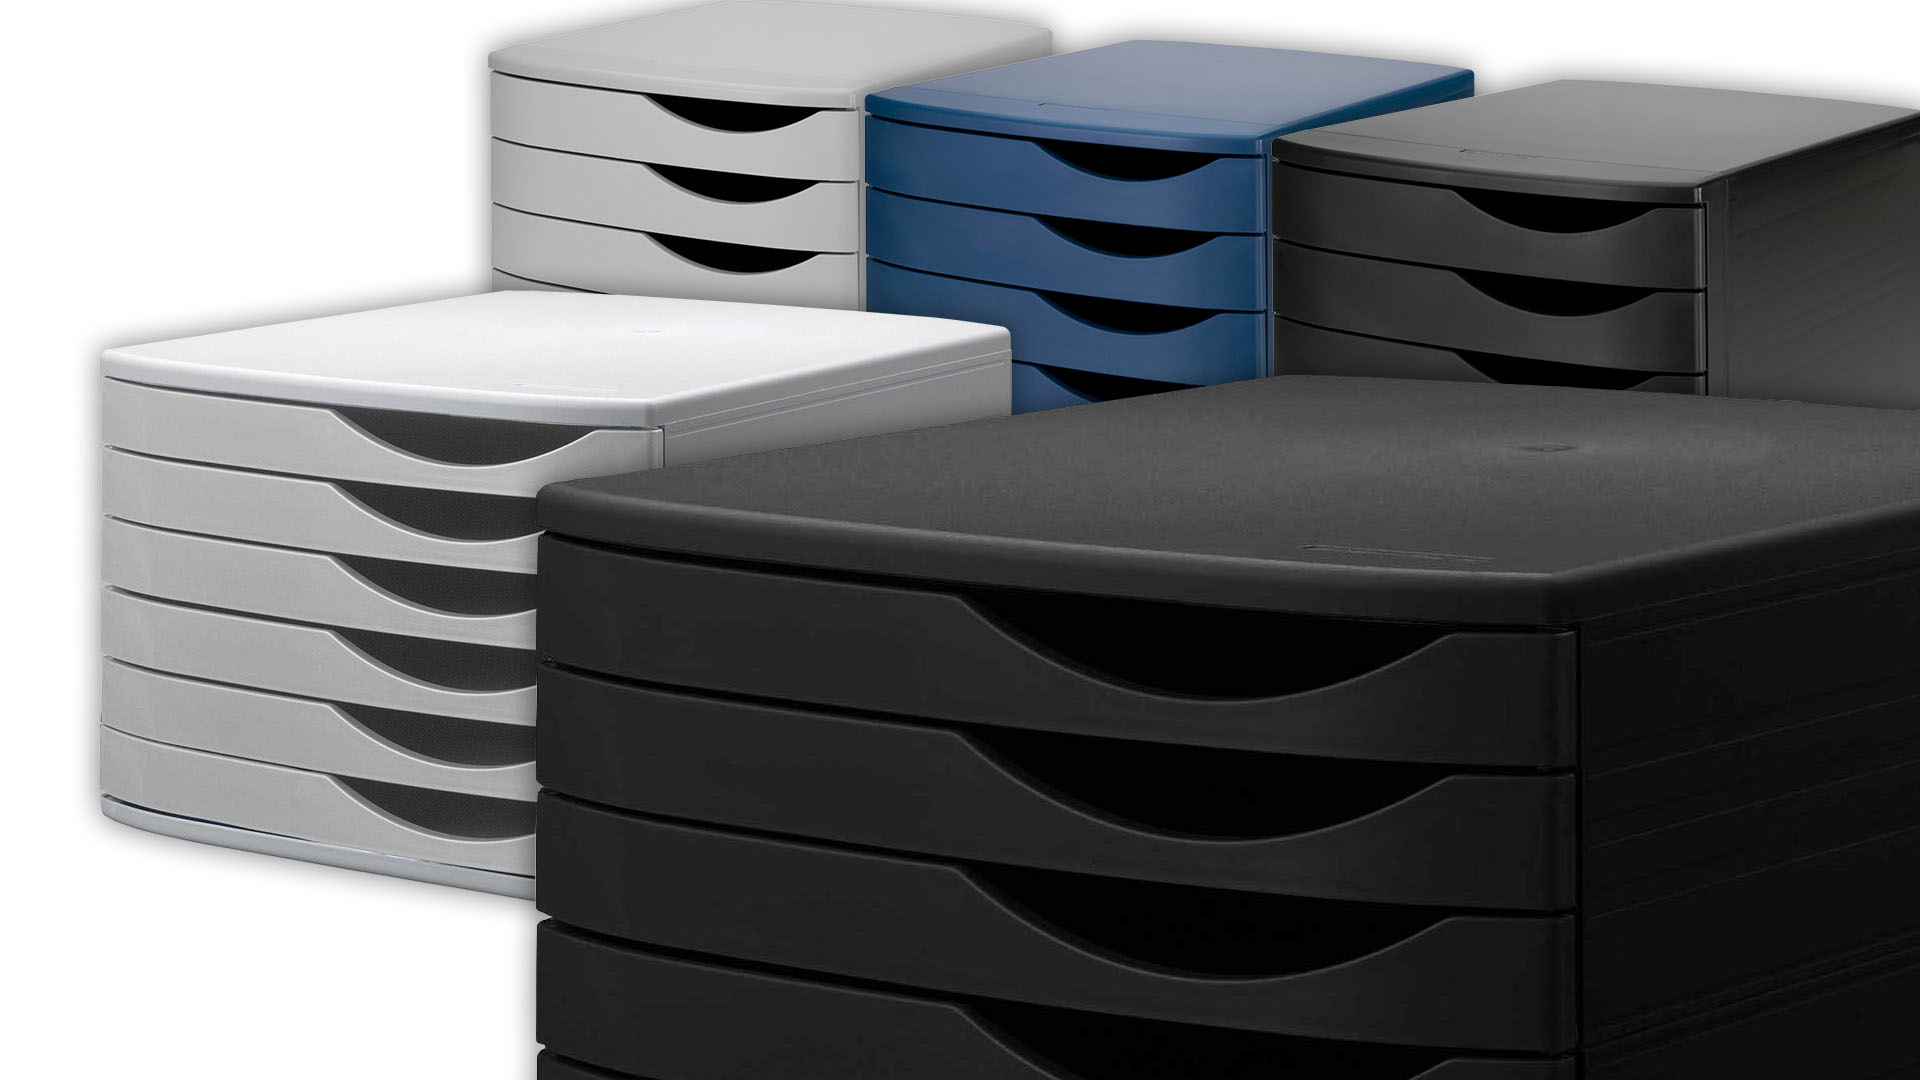 Schubladenboxen zur Aufbewahrung von Dokumenten und Unterlagen - für Struktur und Ordnung auf dem Schreibtisch